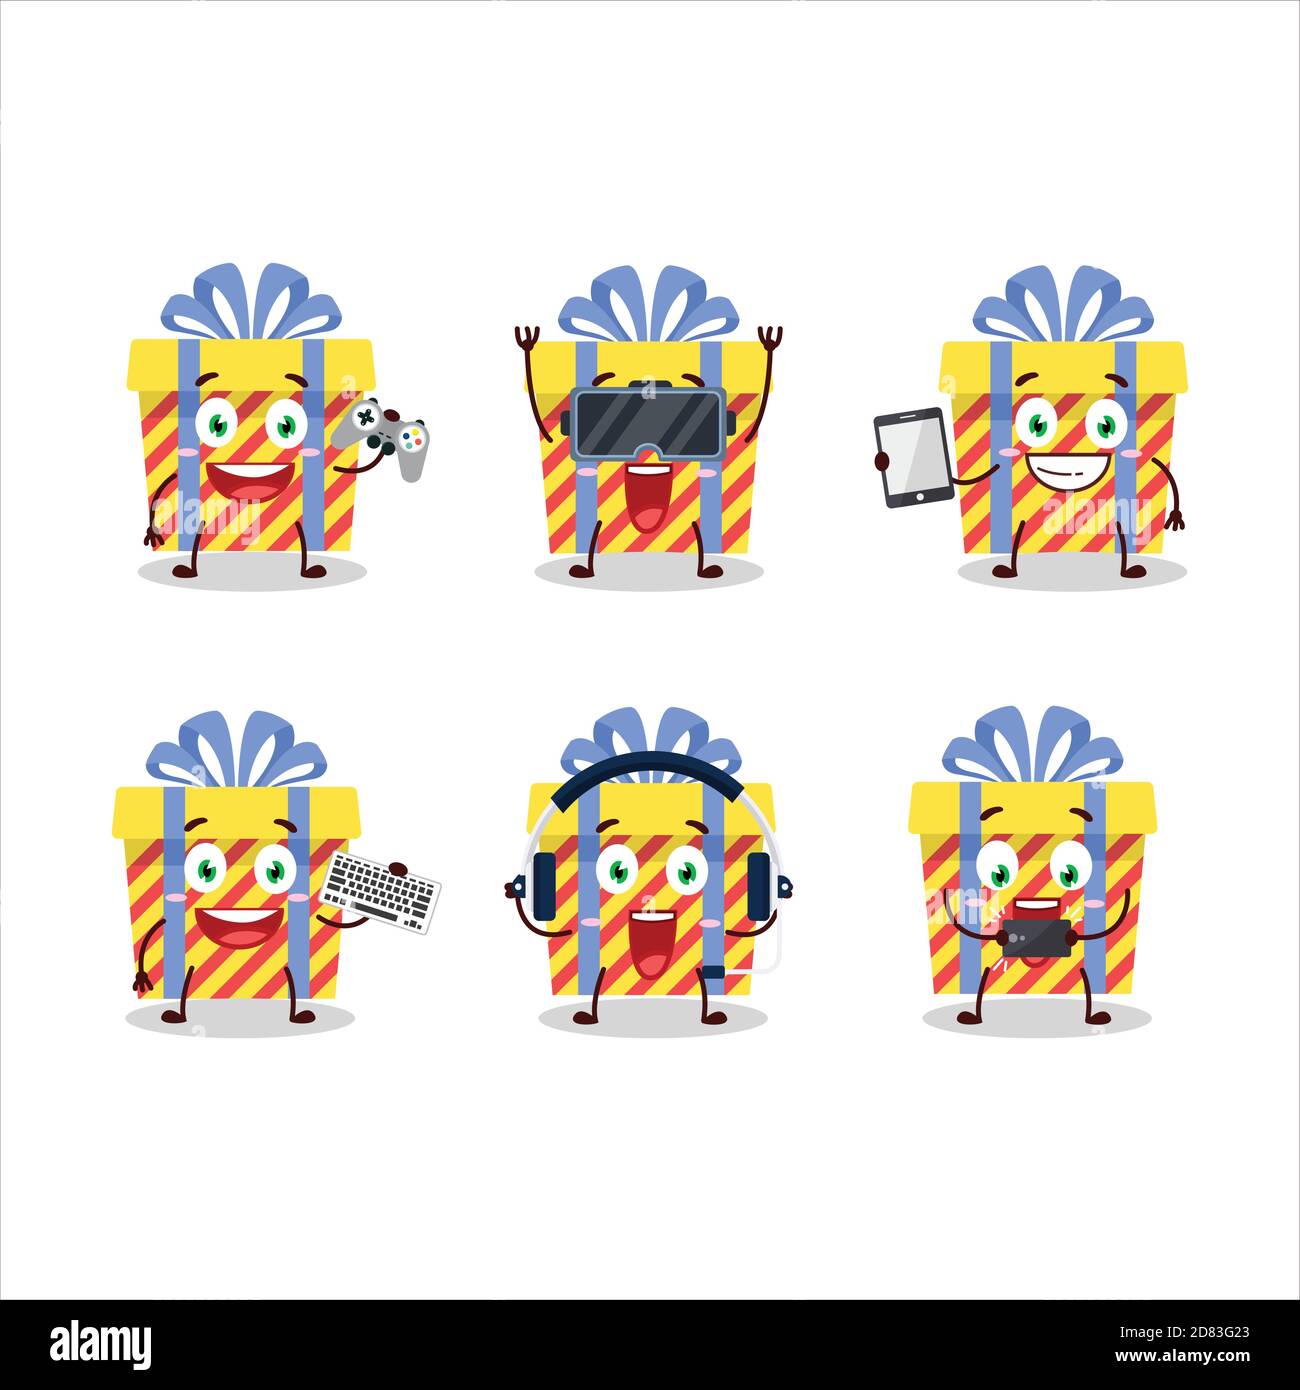 Le personnage de dessin animé de cadeau de bandes jaunes joue à des jeux avec divers émoticônes mignons Illustration de Vecteur